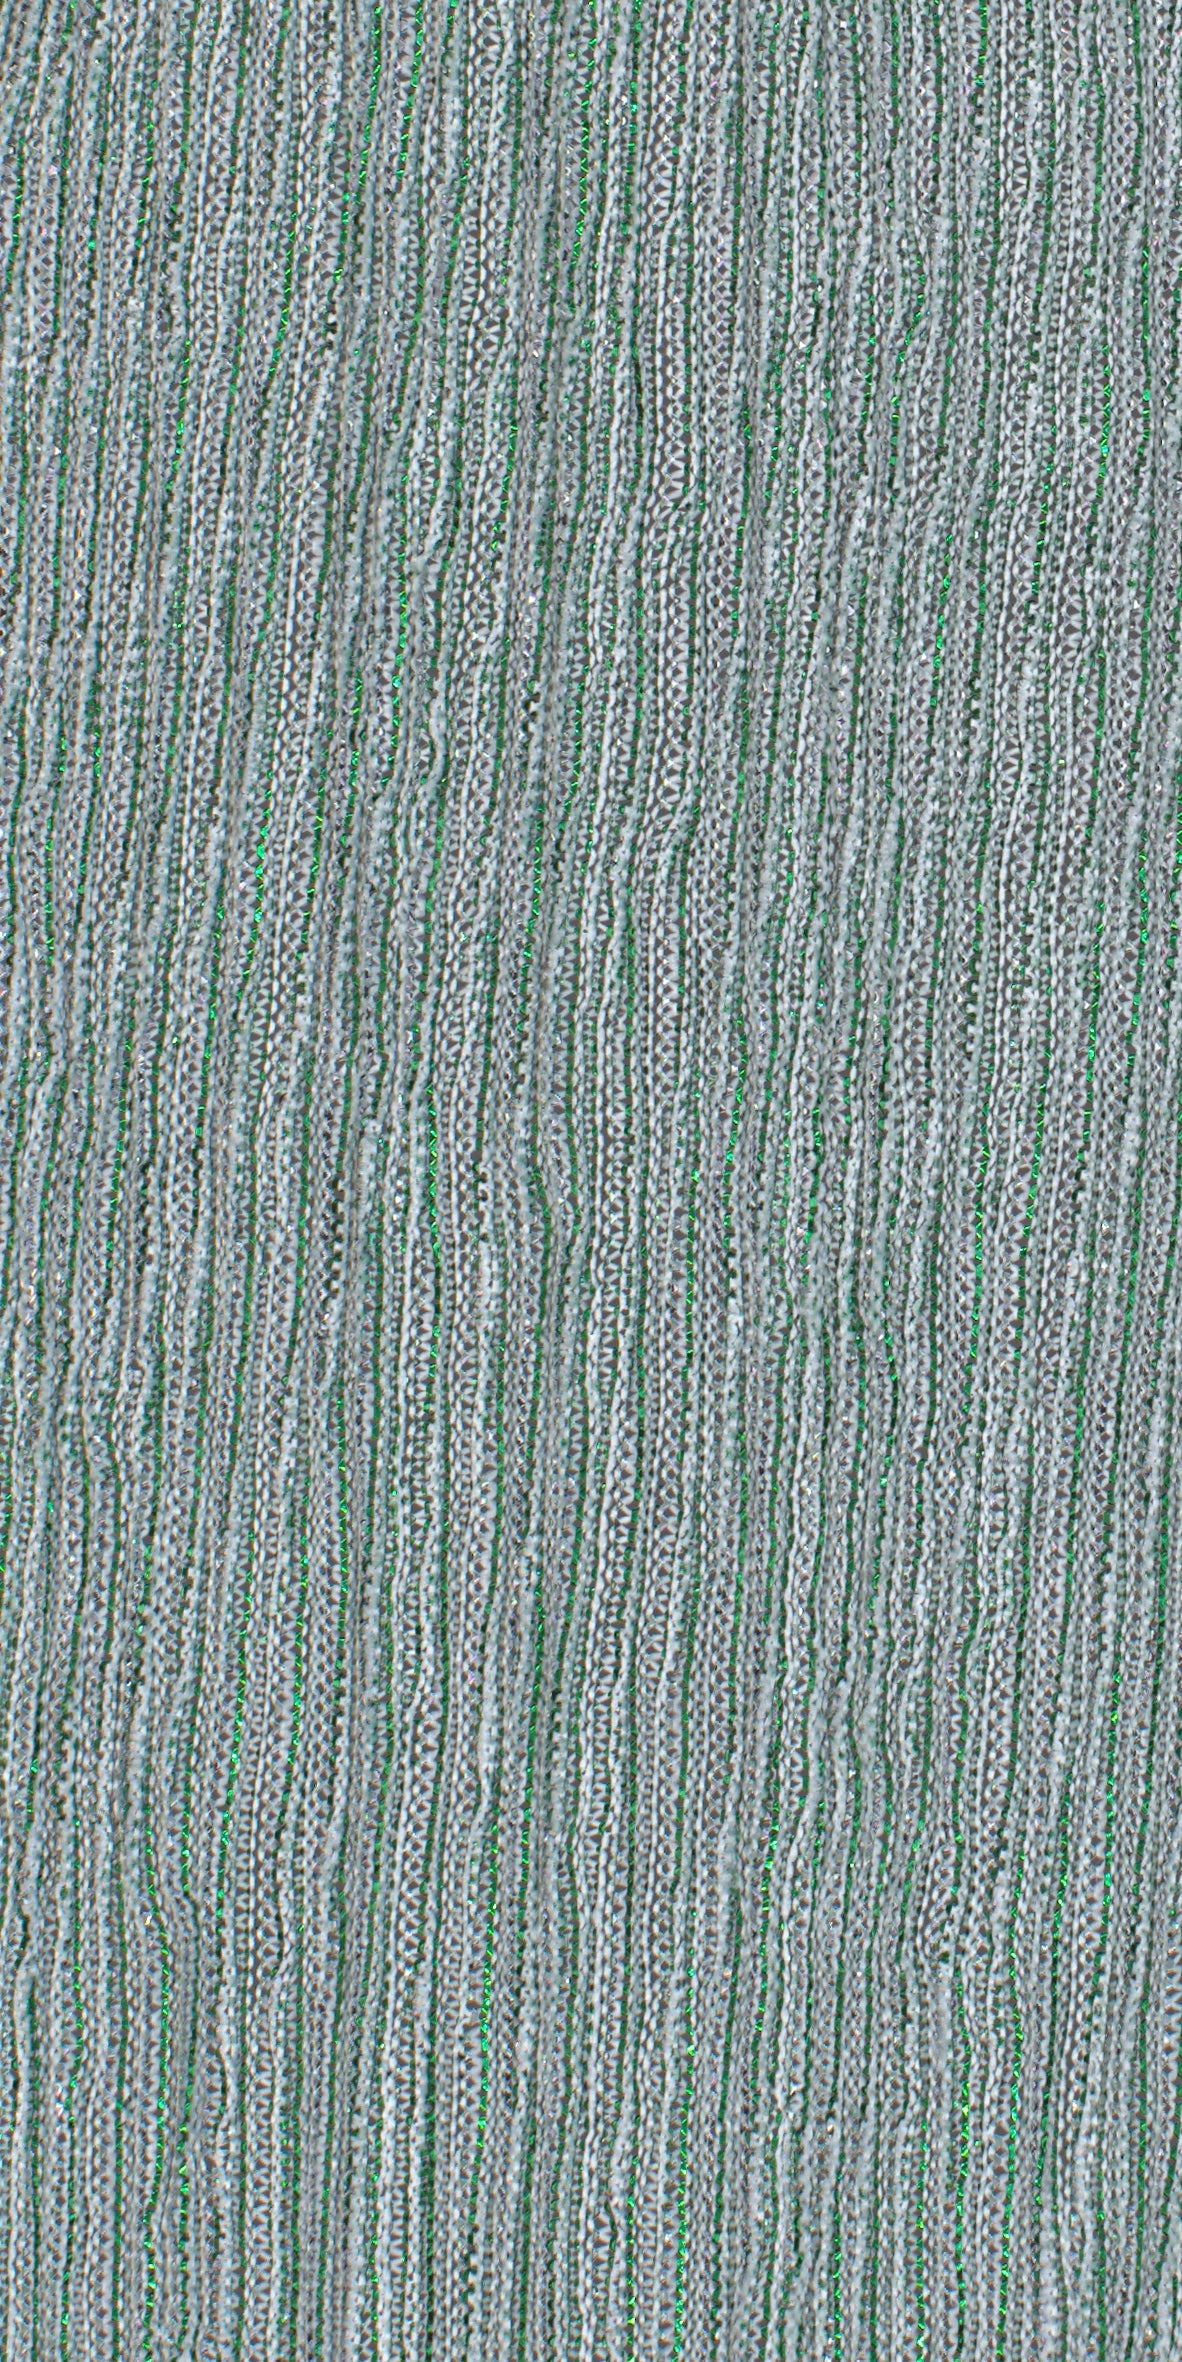 12006-13 Green Silver Metallic Pleat Plain Dyed Blend 126g/yd 56&quot; blend green knit metallic plain dyed pleat ppl new silver Metallic, Pleat - knit fabric - woven fabric - fabric company - fabric wholesale - fabric b2b - fabric factory - high quality fabric - hong kong fabric - fabric hk - acetate fabric - cotton fabric - linen fabric - metallic fabric - nylon fabric - polyester fabric - spandex fabric - chun wing hing - cwh hk - fabric worldwide ship - 針織布 - 梳織布 - 布料公司- 布料批發 - 香港布料 - 秦榮興